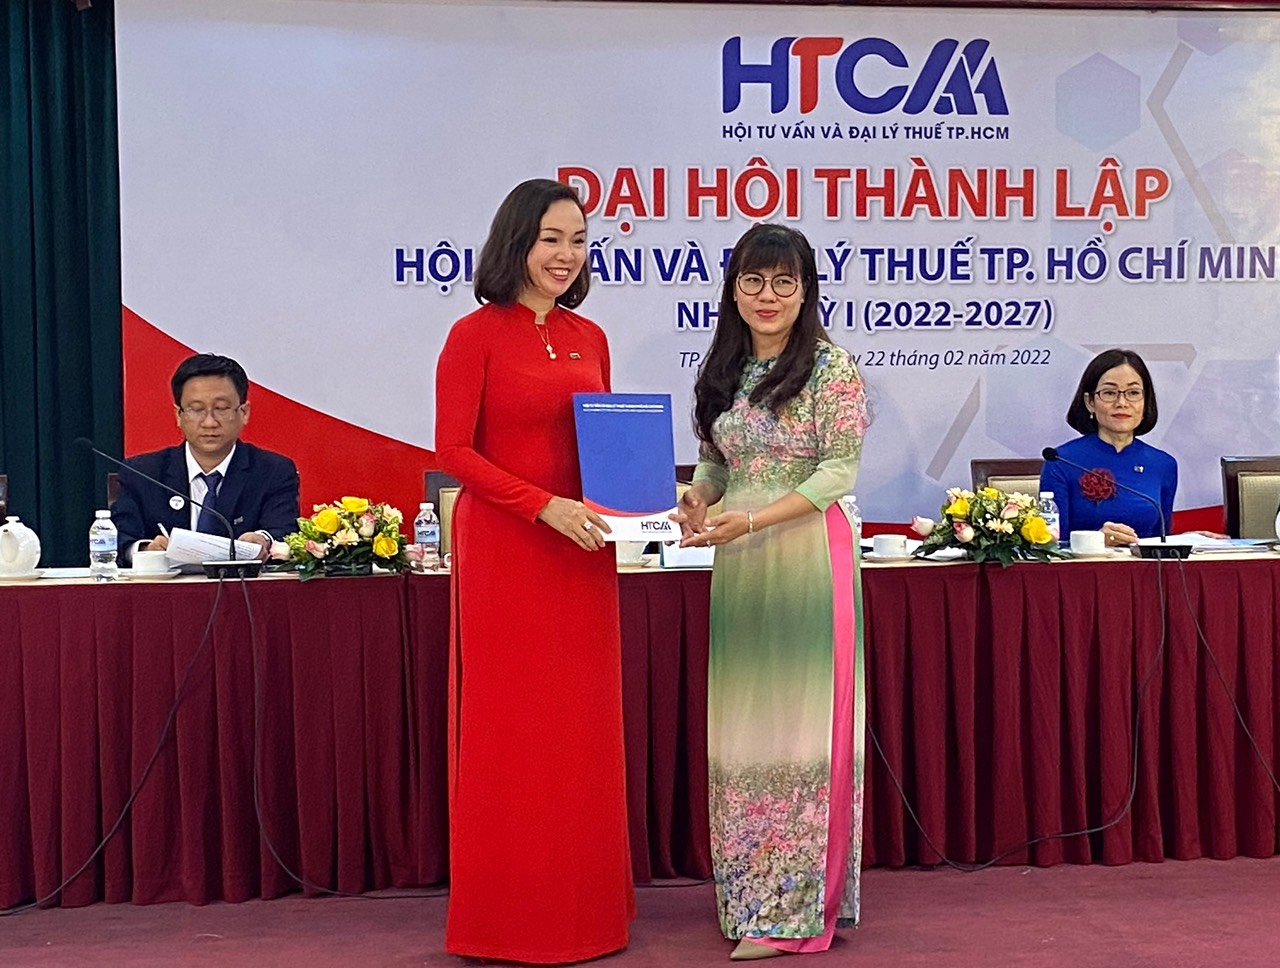 Bà Lê Thị Thu Hương (áo đỏ), nguyên phó cục trưởng Cục Thuế TP.HCM, làm chủ tịch hộ